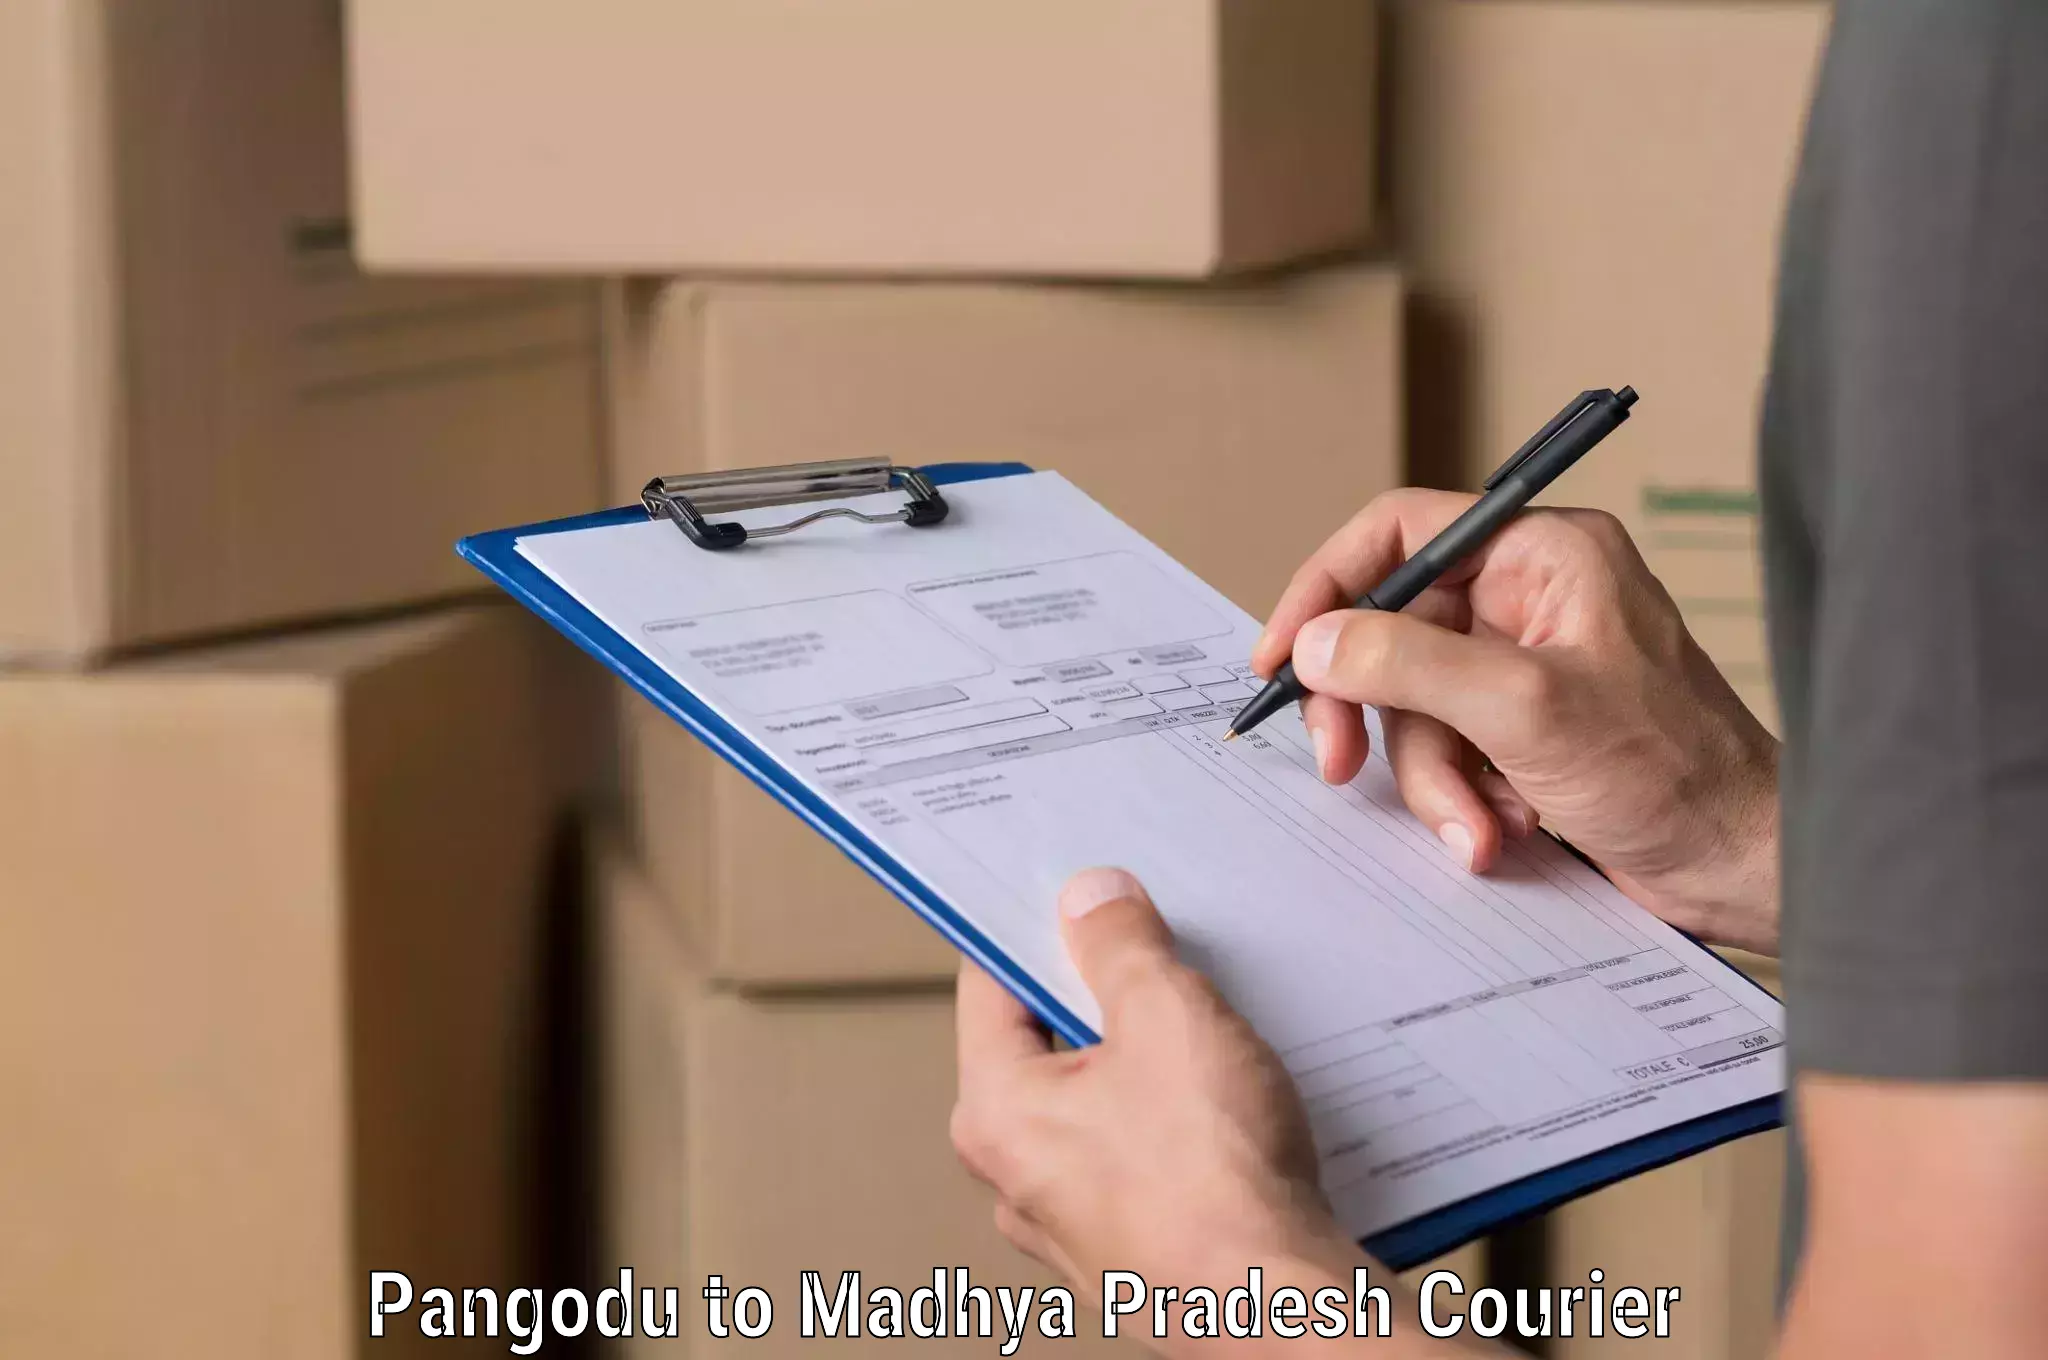 Ocean freight courier Pangodu to Depalpur